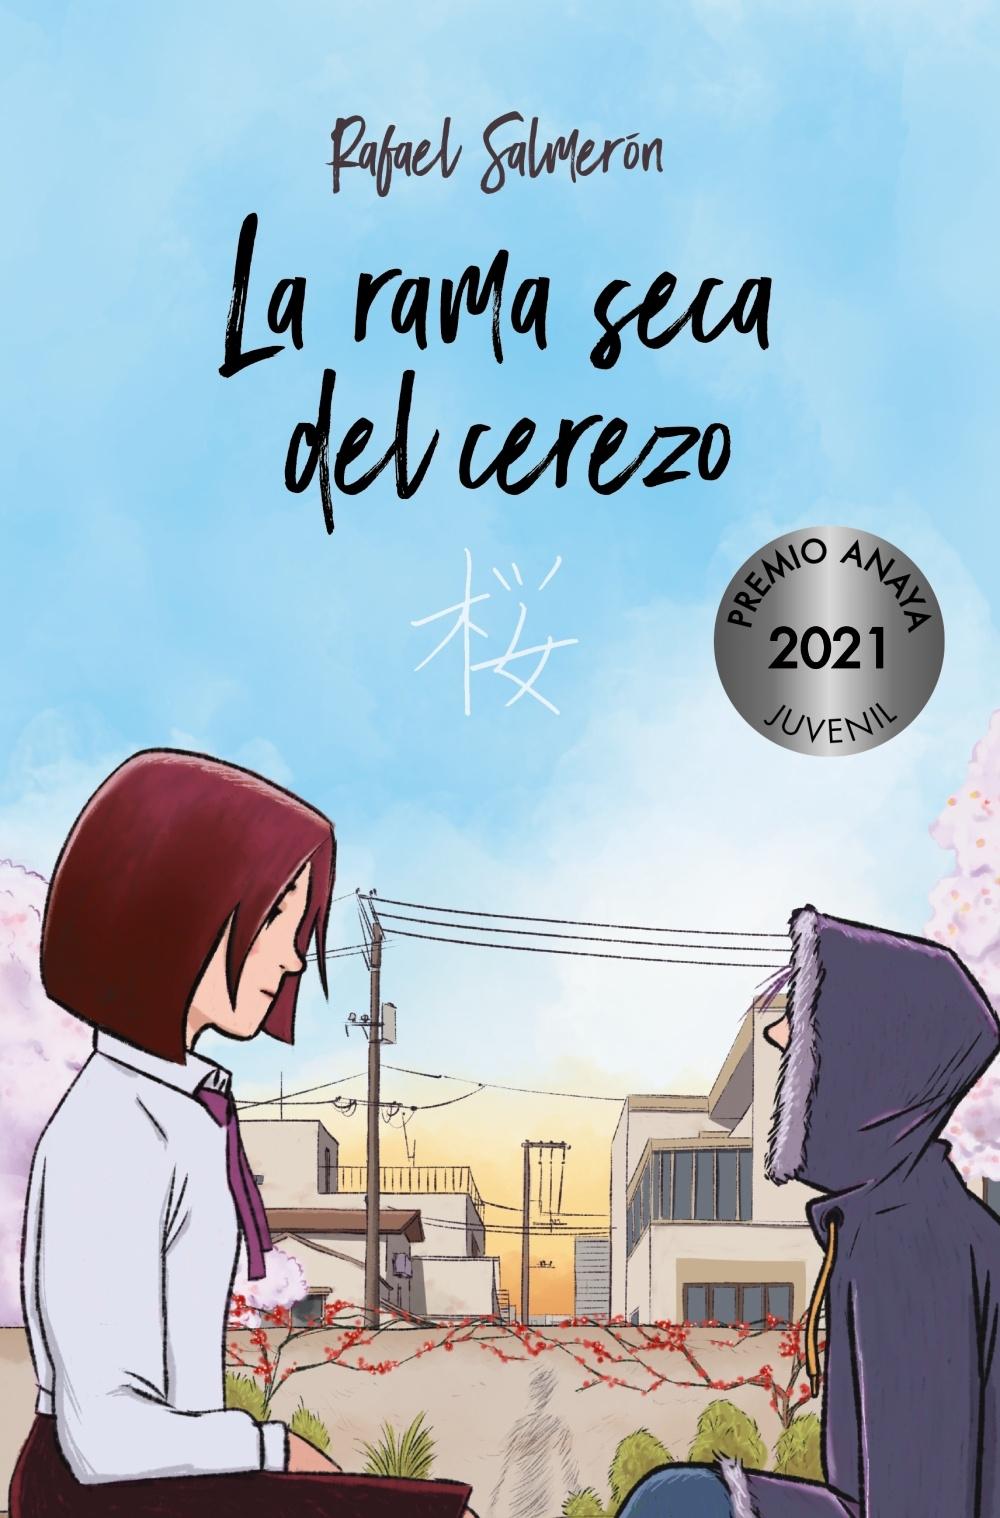 Rama seca del cerezo, La "Novela ganadora del XVIII Premio Anaya Infantil y Juvenil"